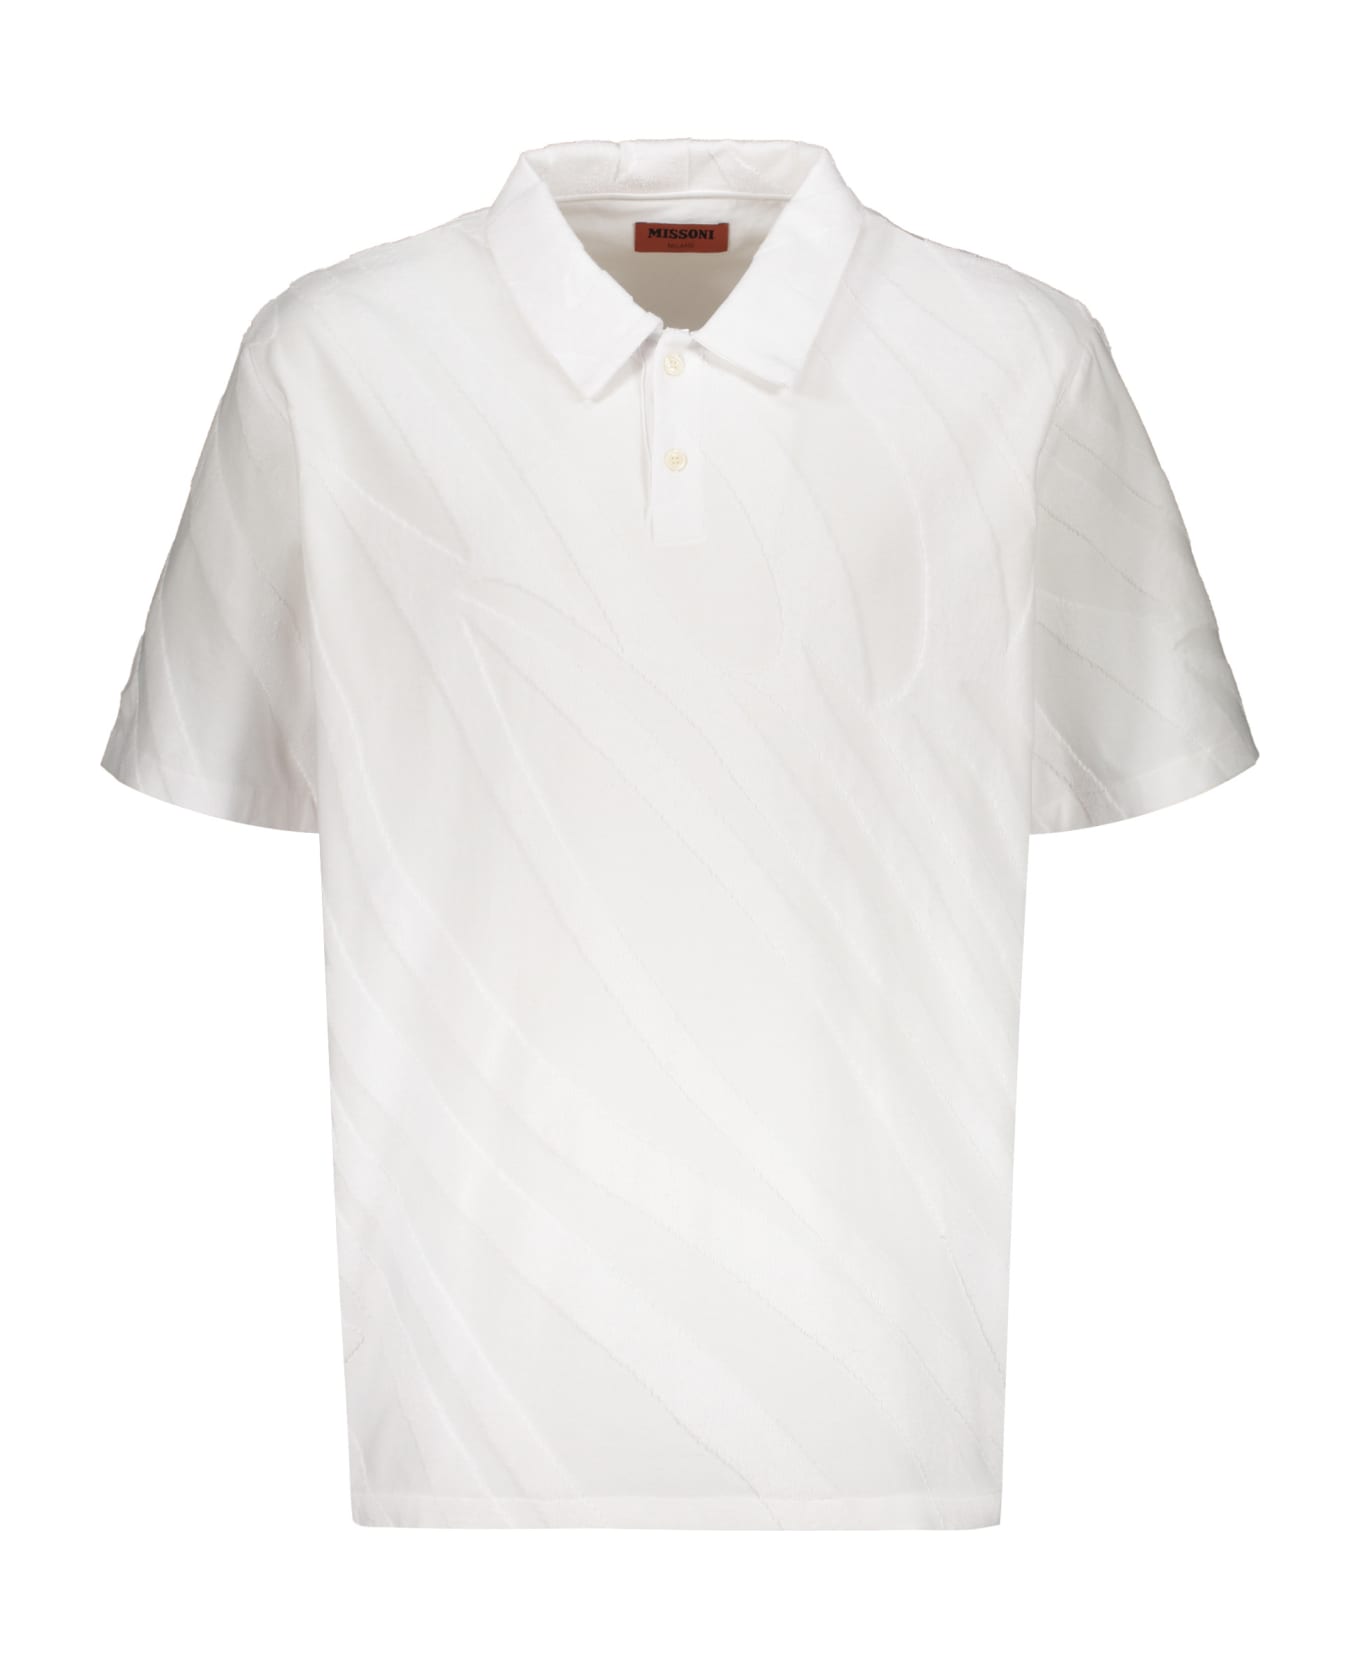 Missoni Cotton Polo Shirt - White